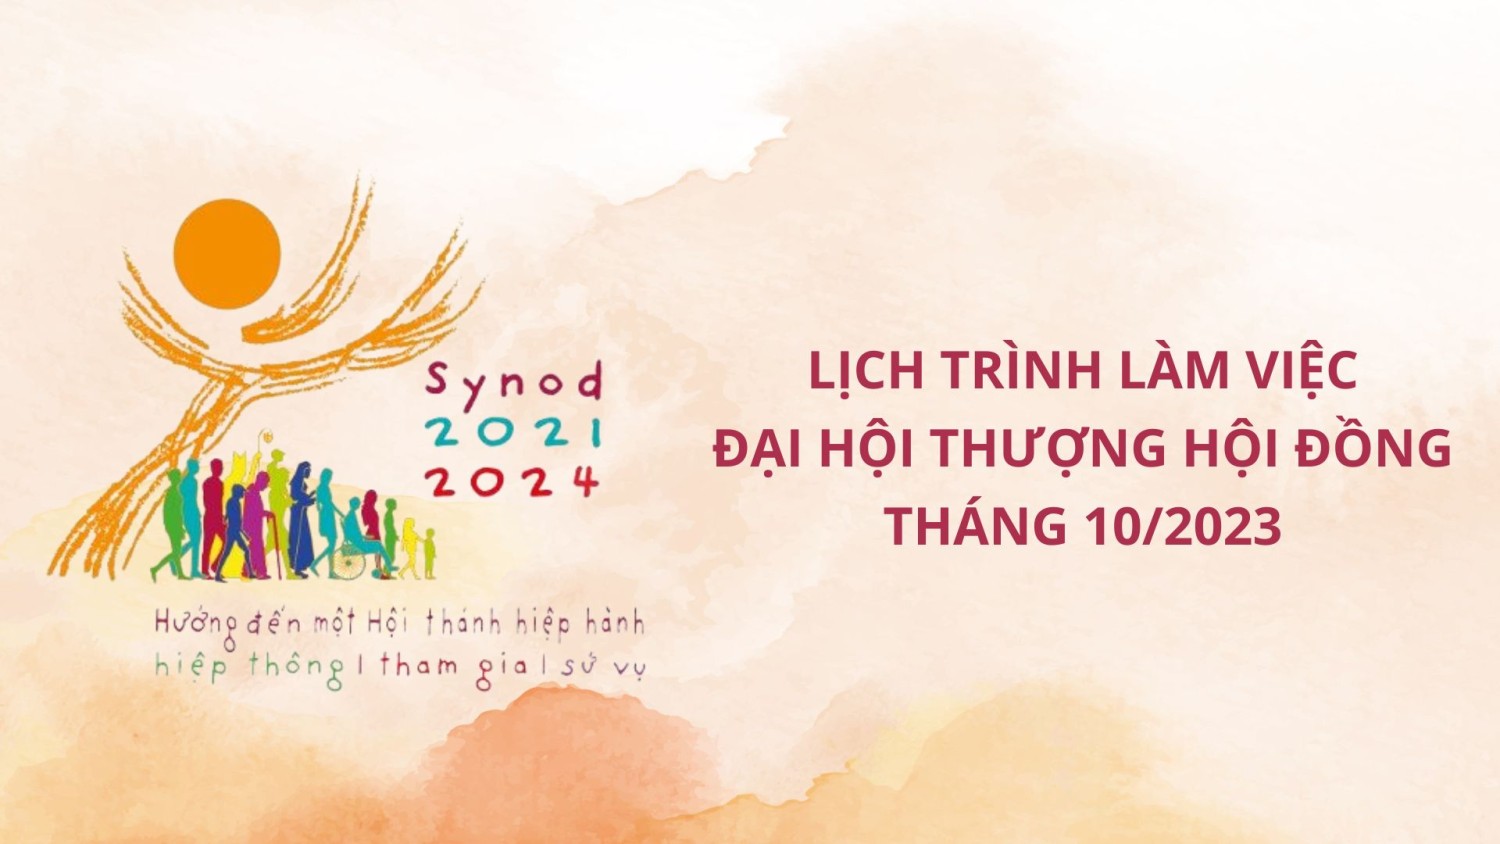 lich trinh lam viec dai hoi thuong hoi dong thang 10 2023